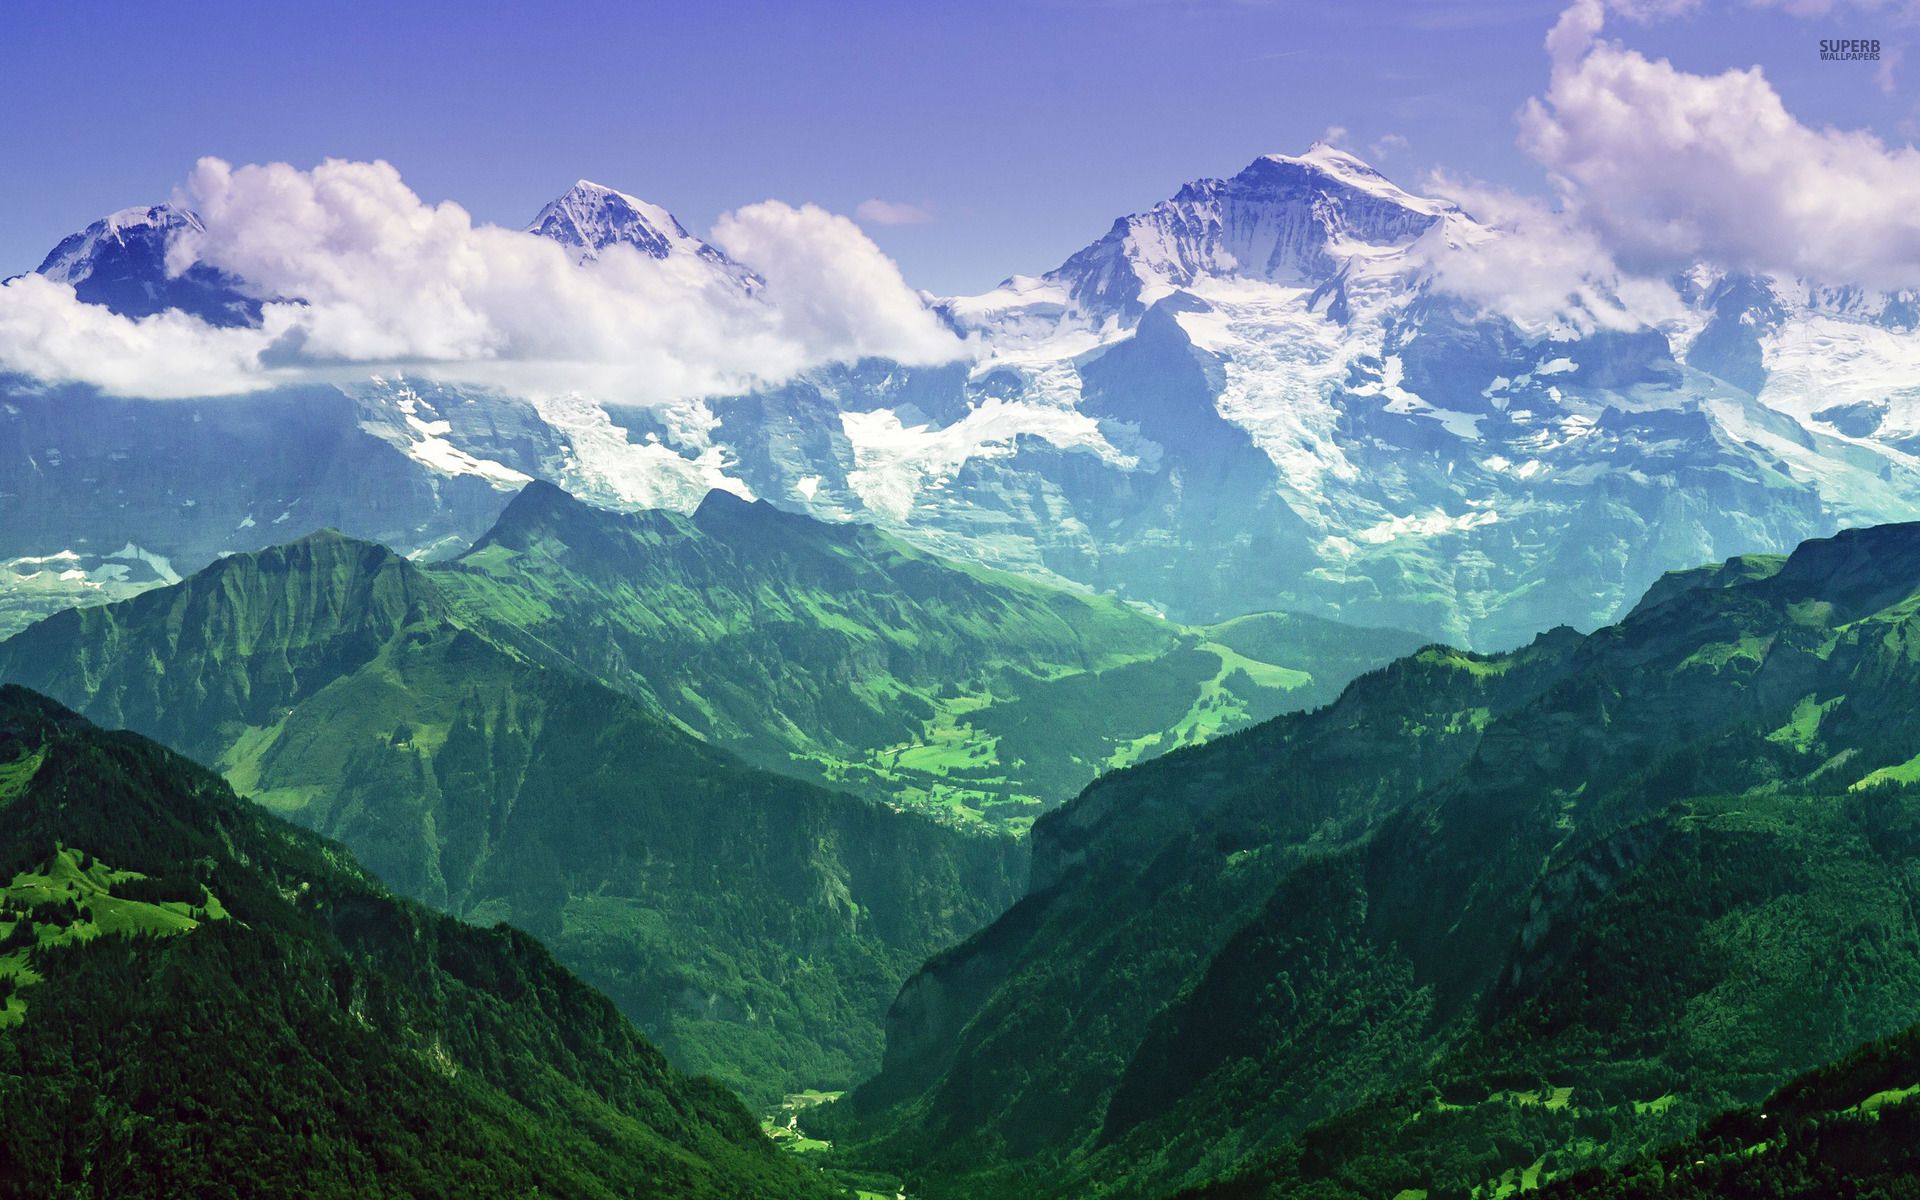 Jungfrau, Bernese Alps, Switzerland wallpaper - Nature wallpapers ...